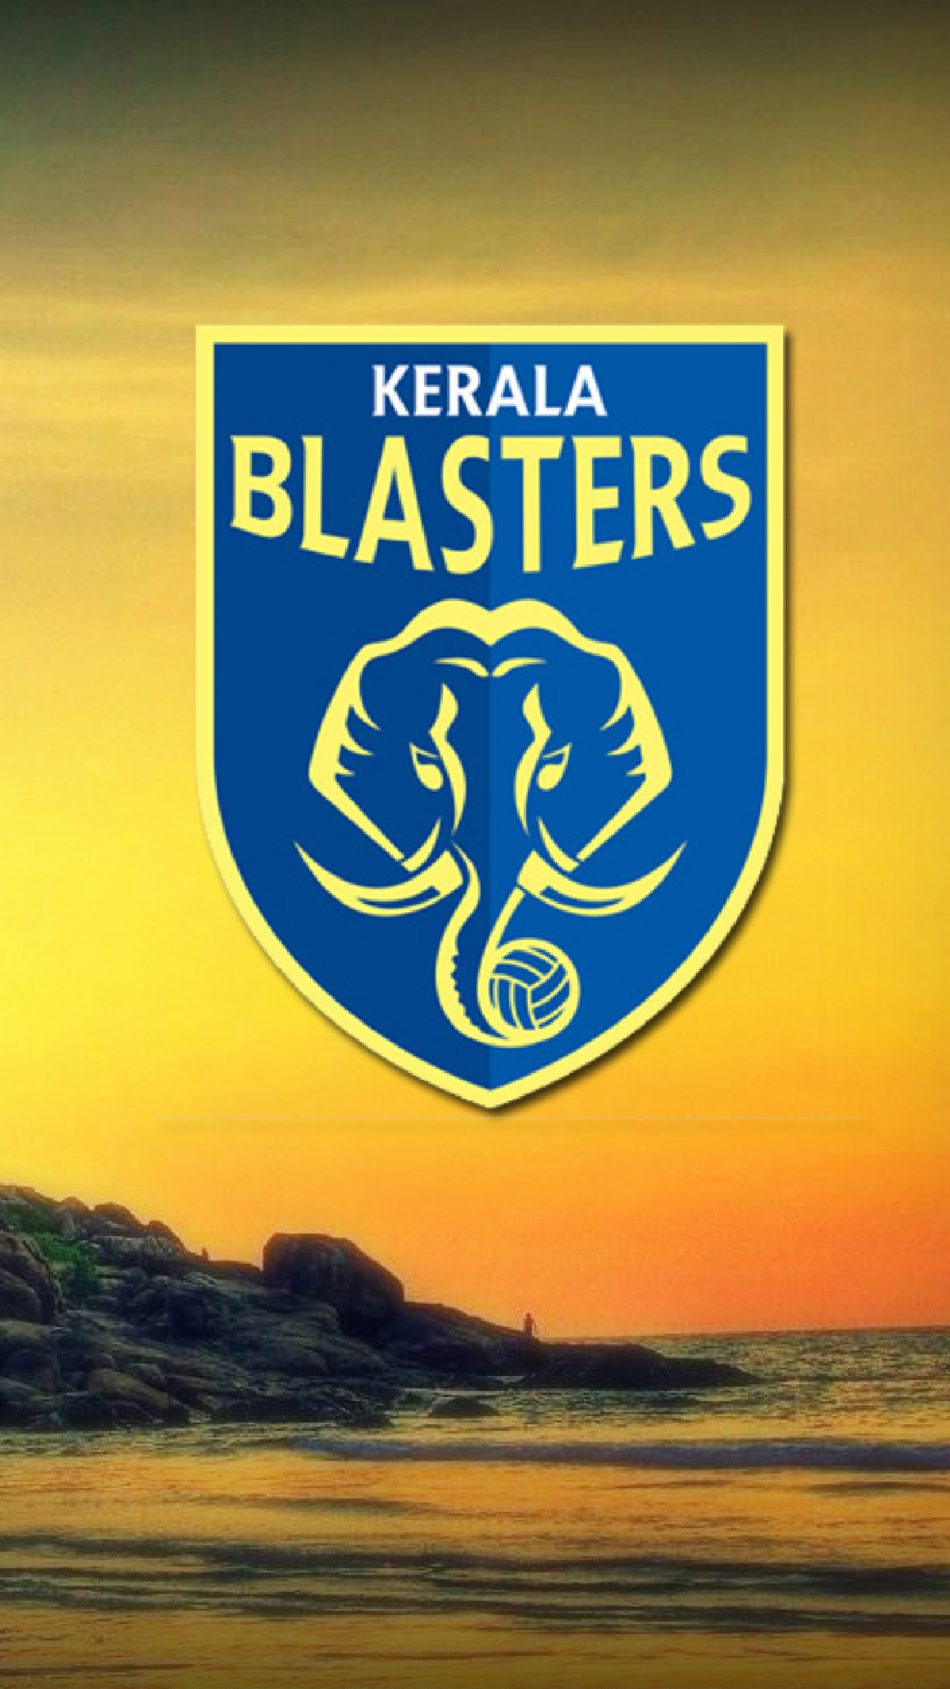 Kerala Blasters 4K Ultra HD Mobile Wallpaper